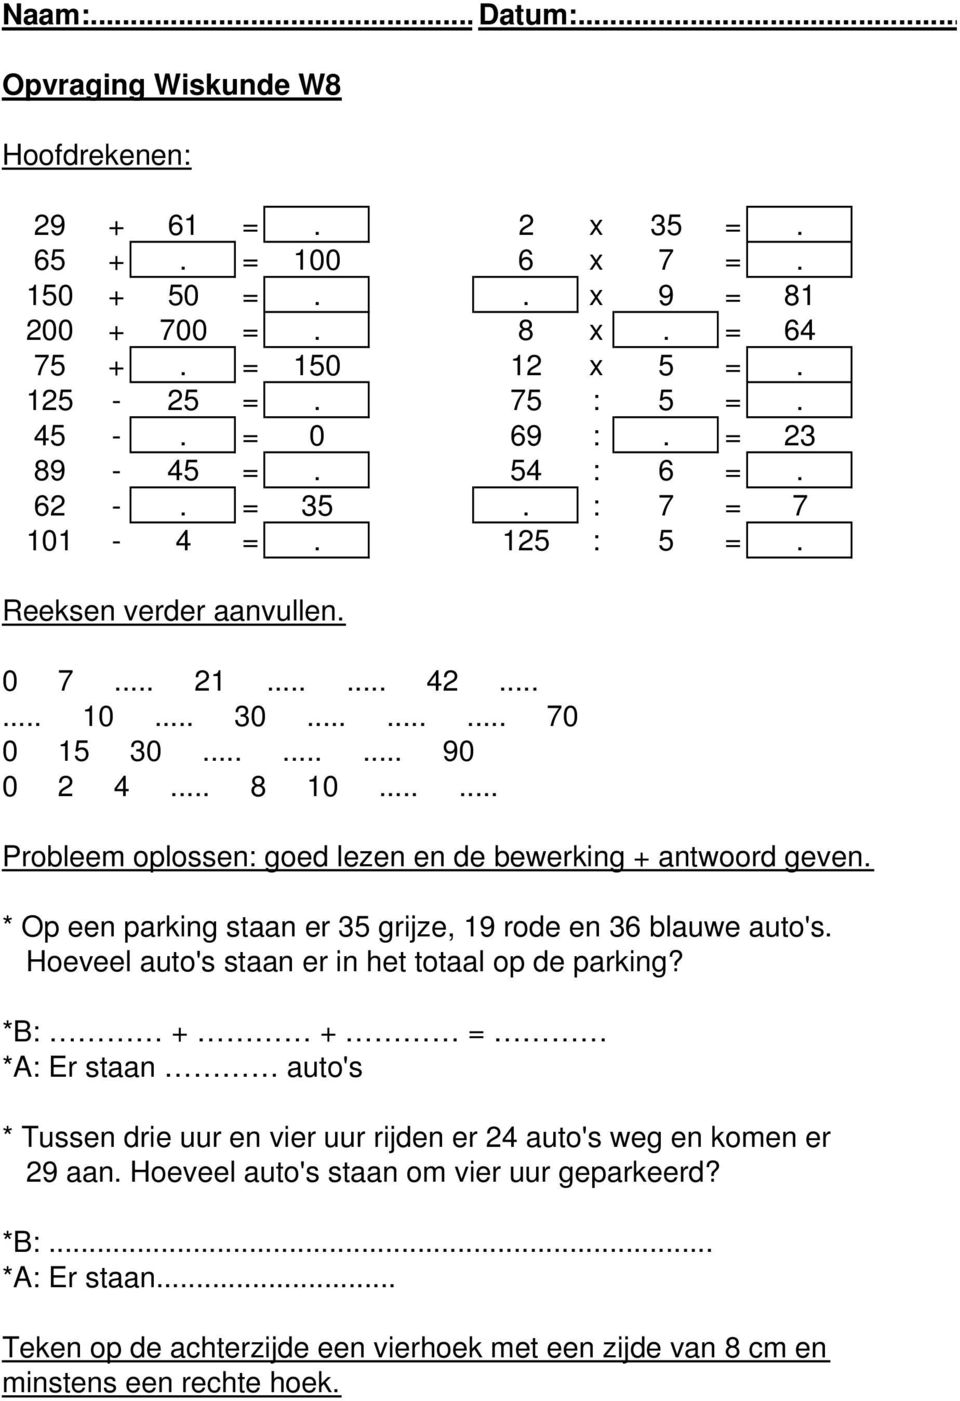 ..... Probleem oplossen: goed lezen en de bewerking + antwoord geven. * Op een parking staan er 35 grijze, 19 rode en 36 blauwe auto's. Hoeveel auto's staan er in het totaal op de parking?